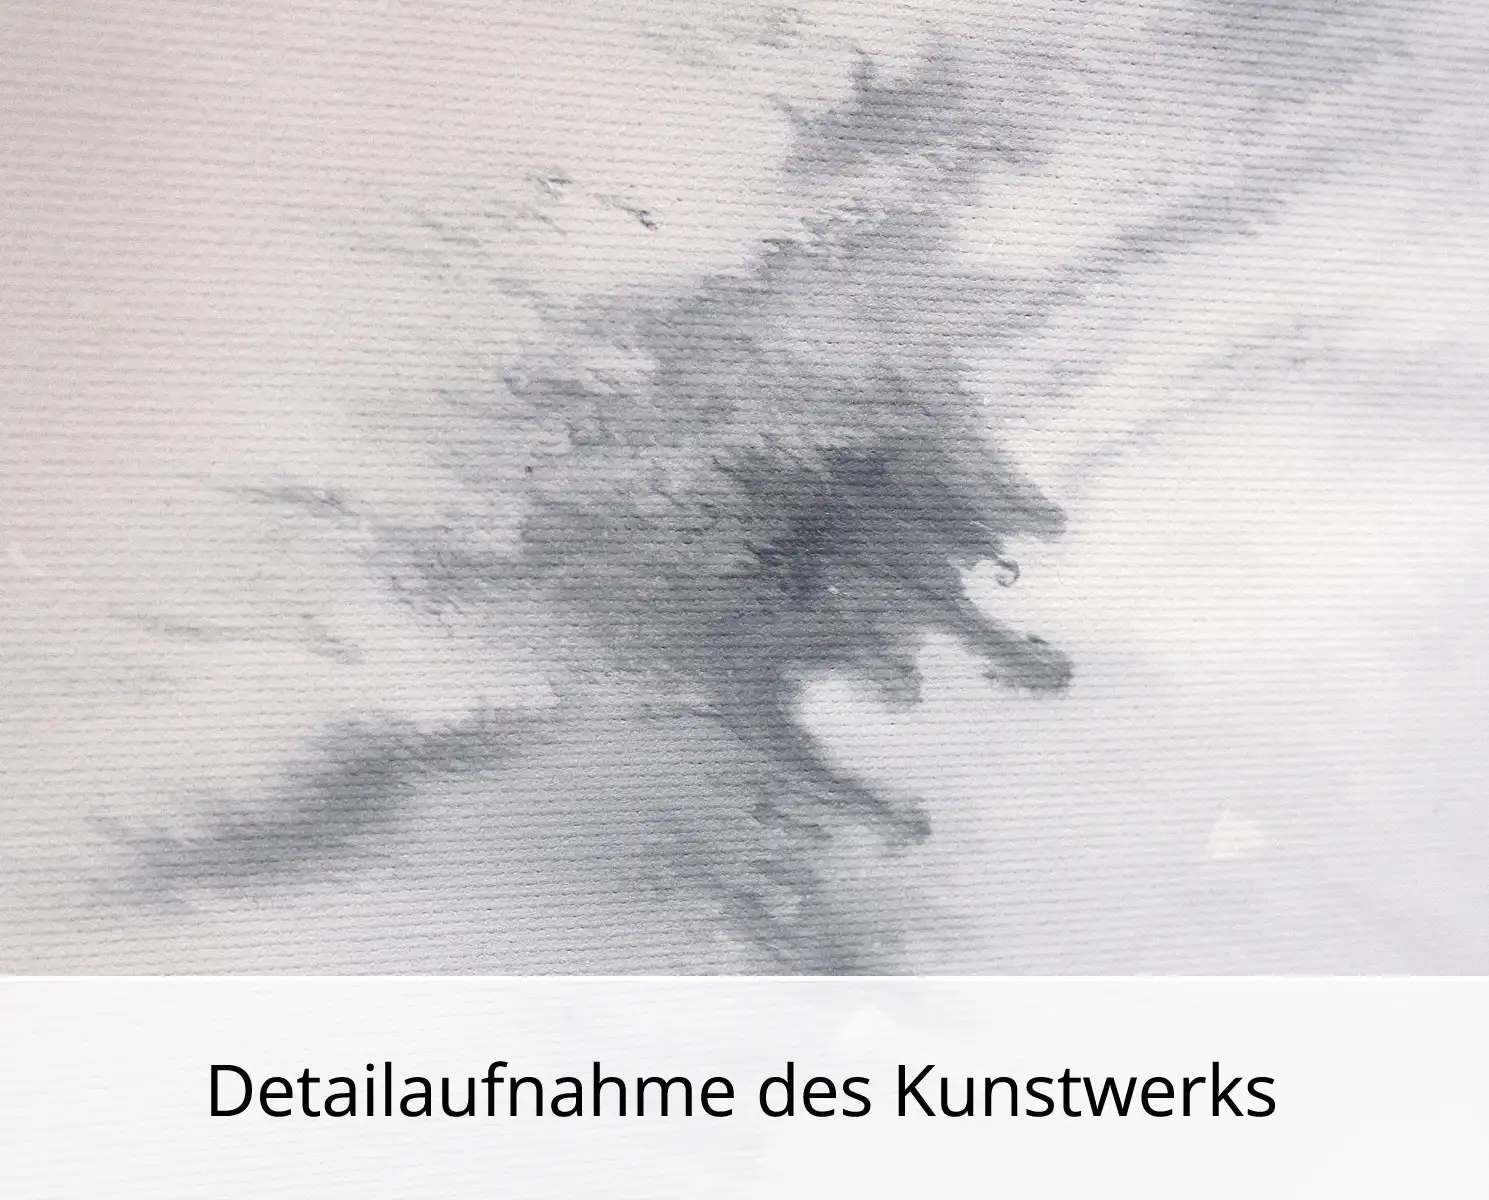 M.Kühne: "Touch of nature", modernes Originalgemälde (Unikat)